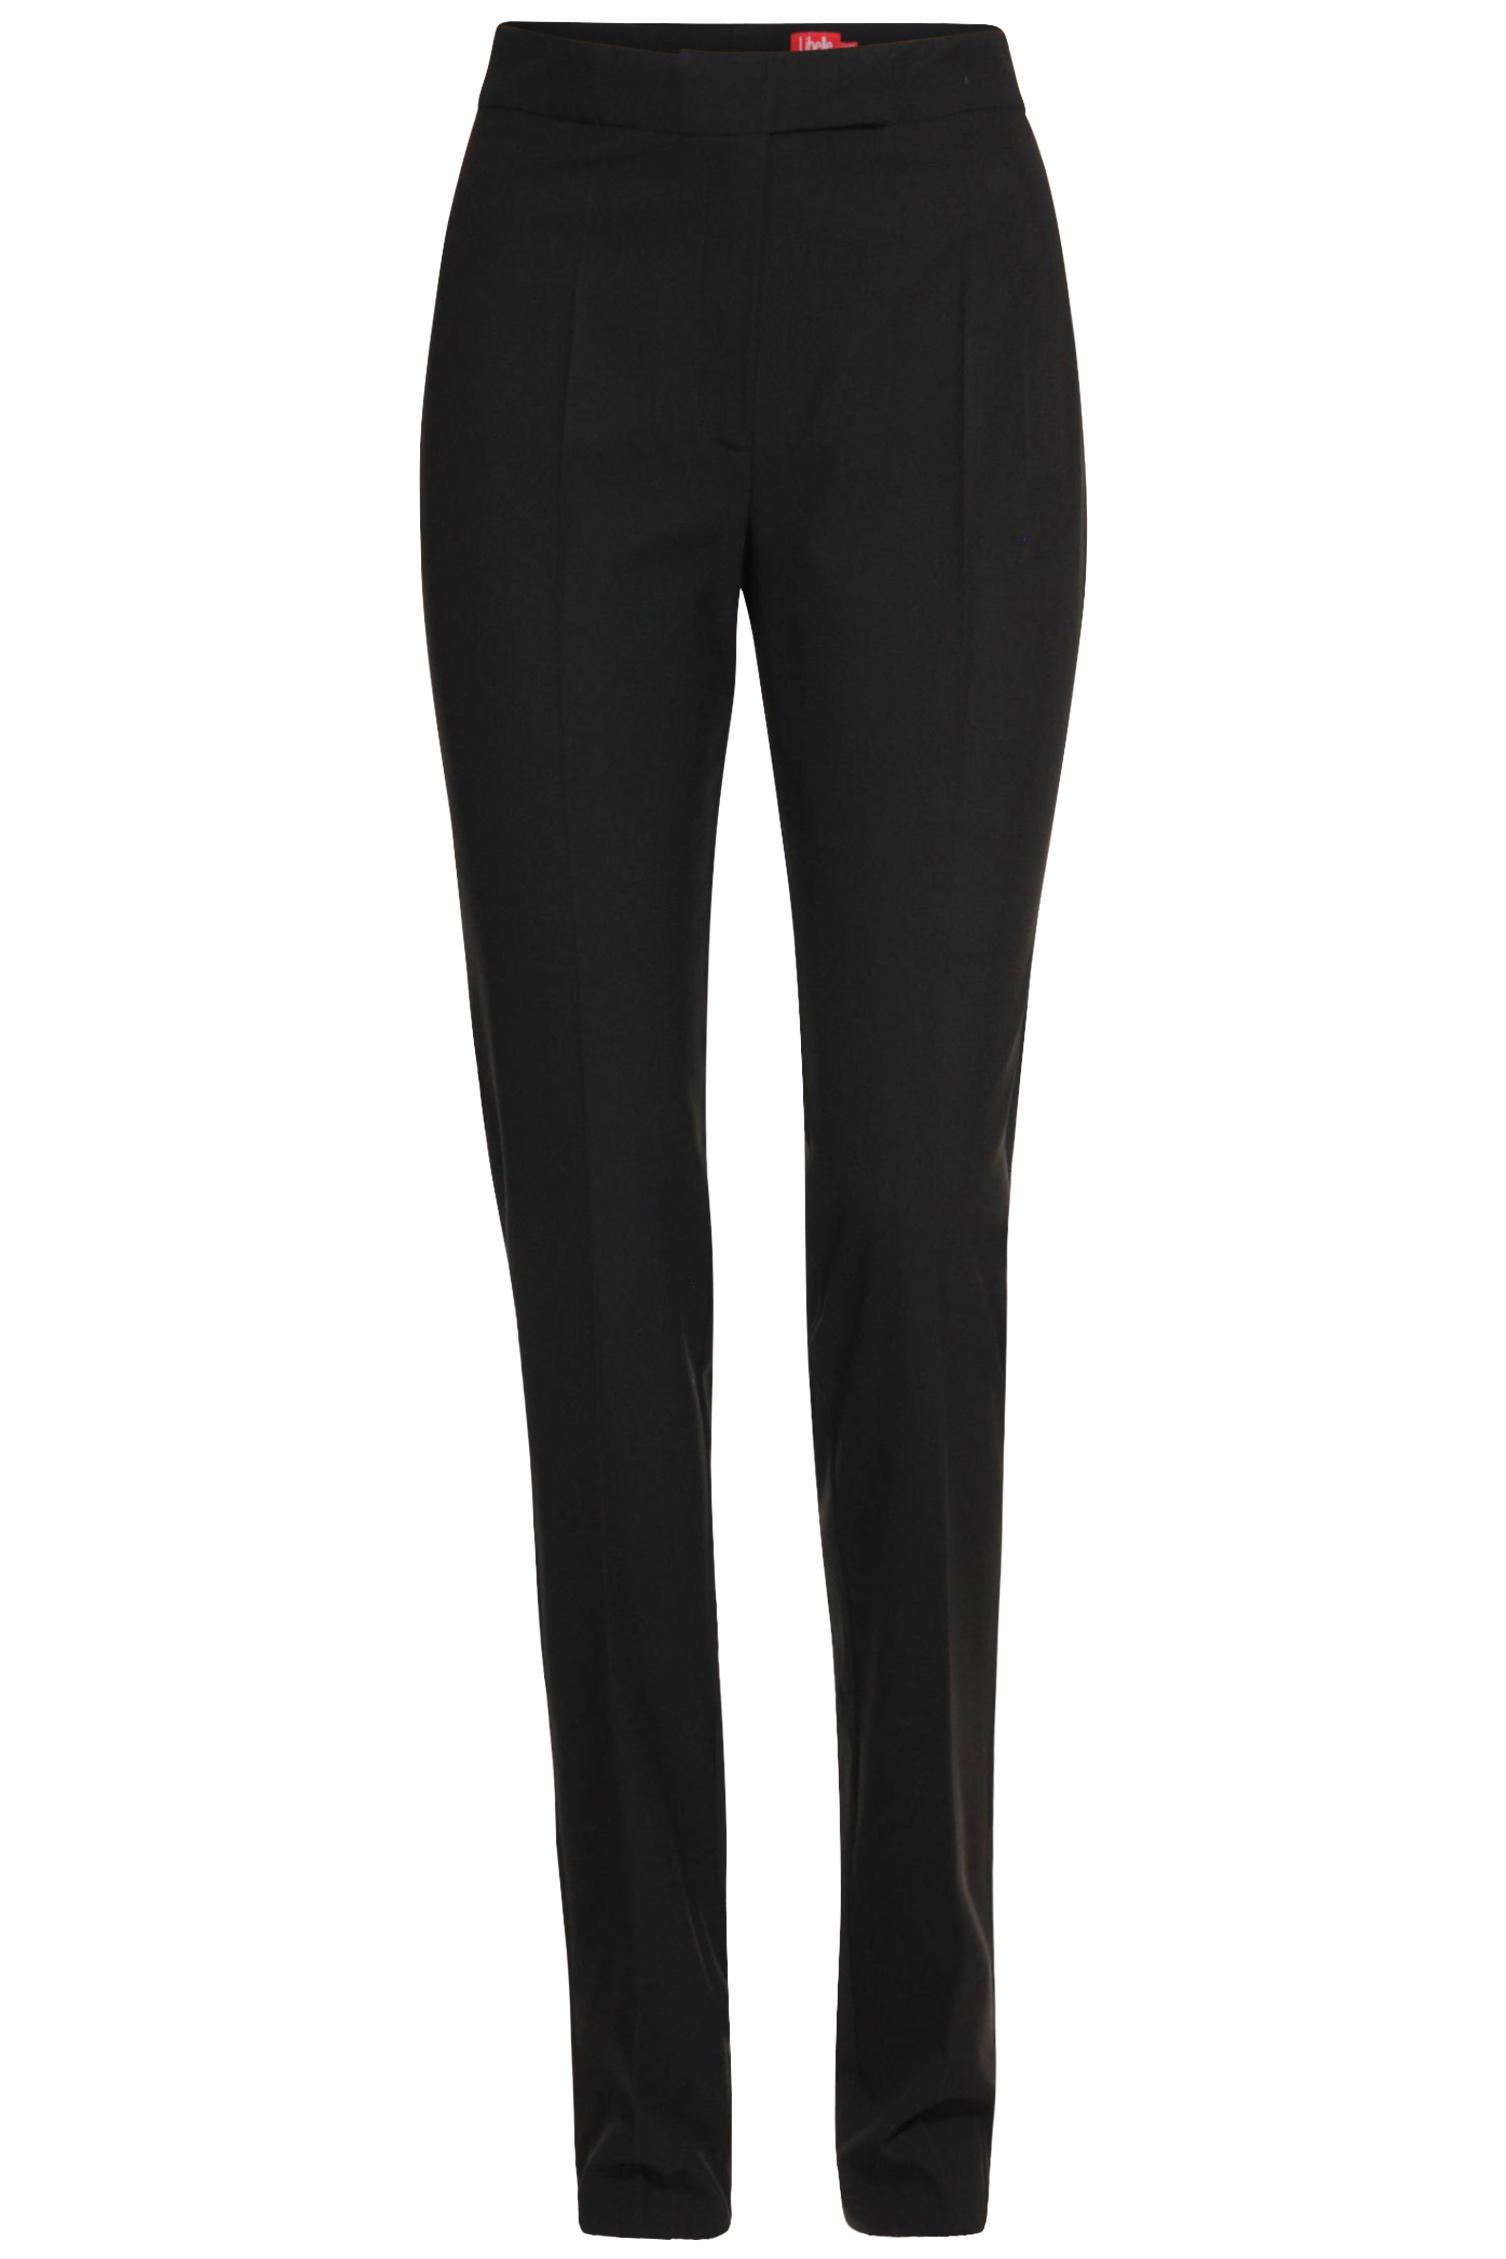 Pantalon noir - 44,95€